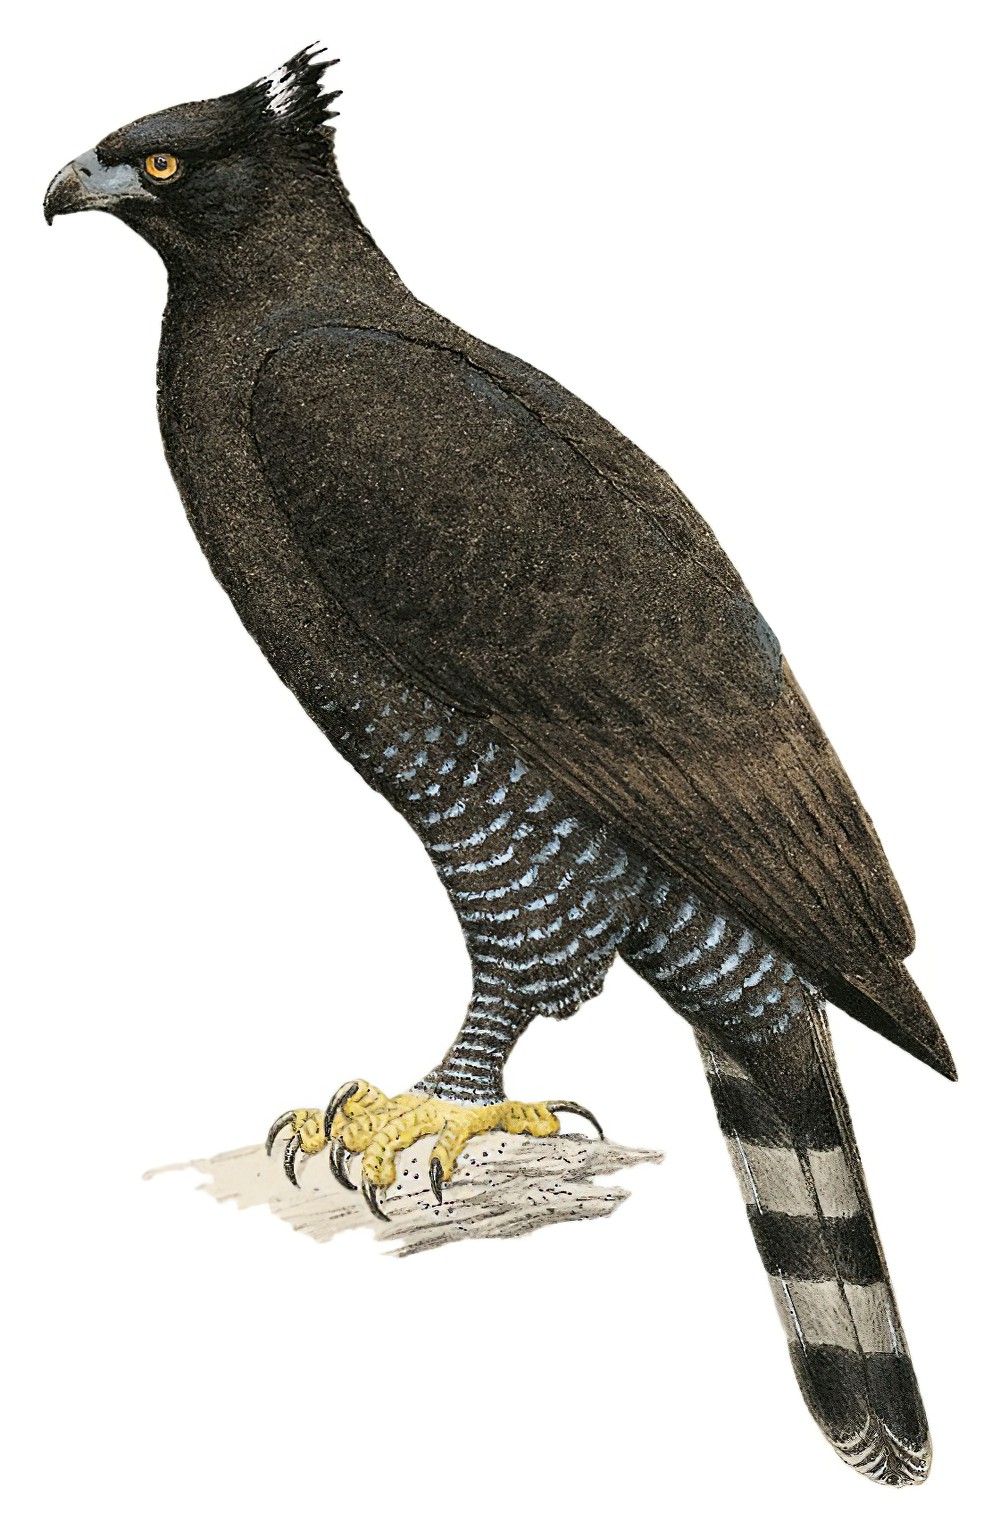 Black Hawk-Eagle / Spizaetus tyrannus